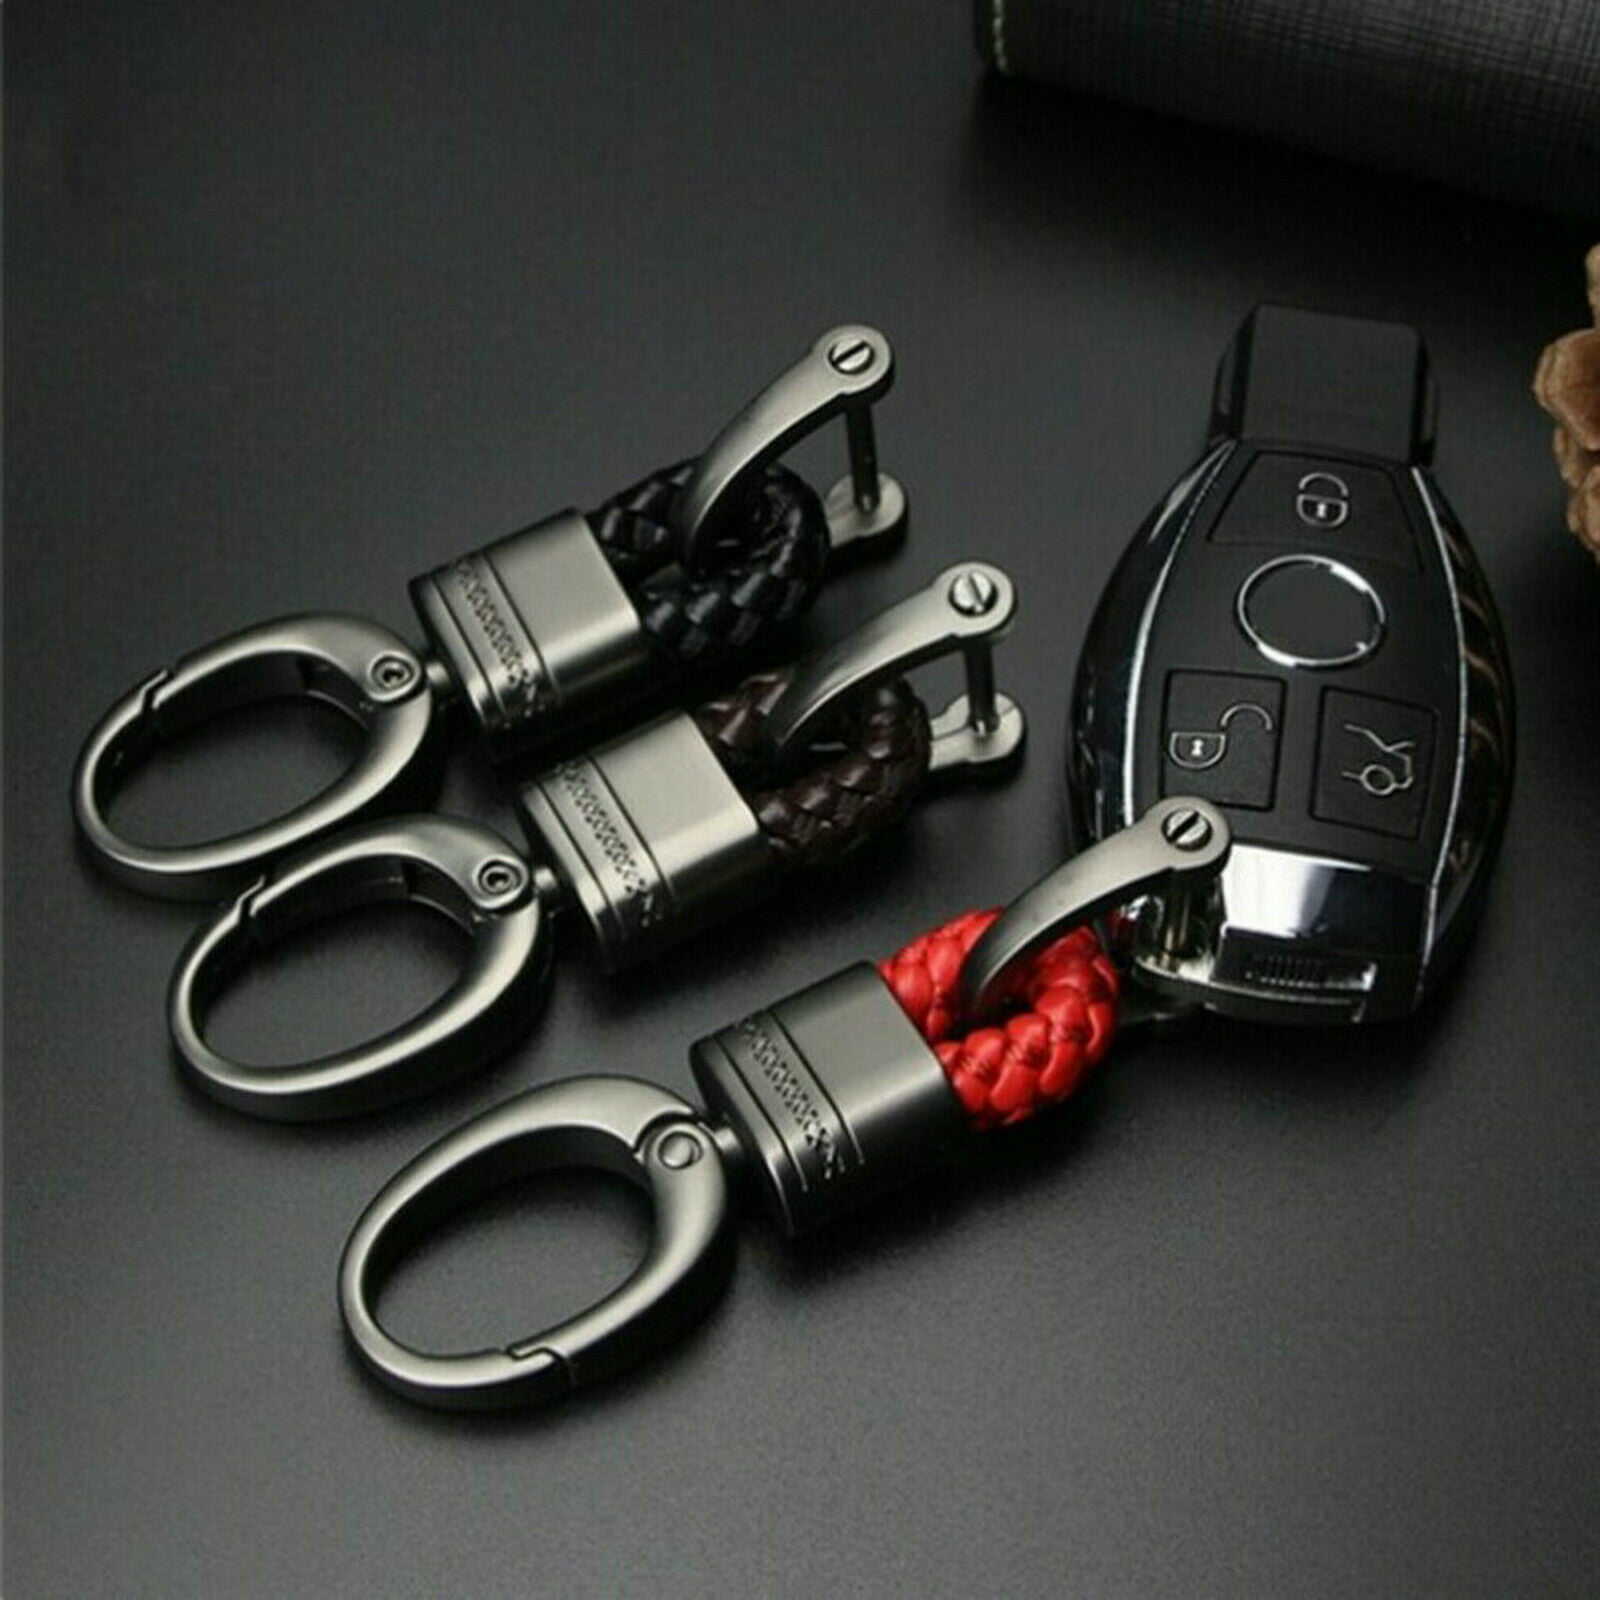 Hot Fashion Men Women Leather Key Chain Ring Keyfob Car Keyring Keychain Gift 